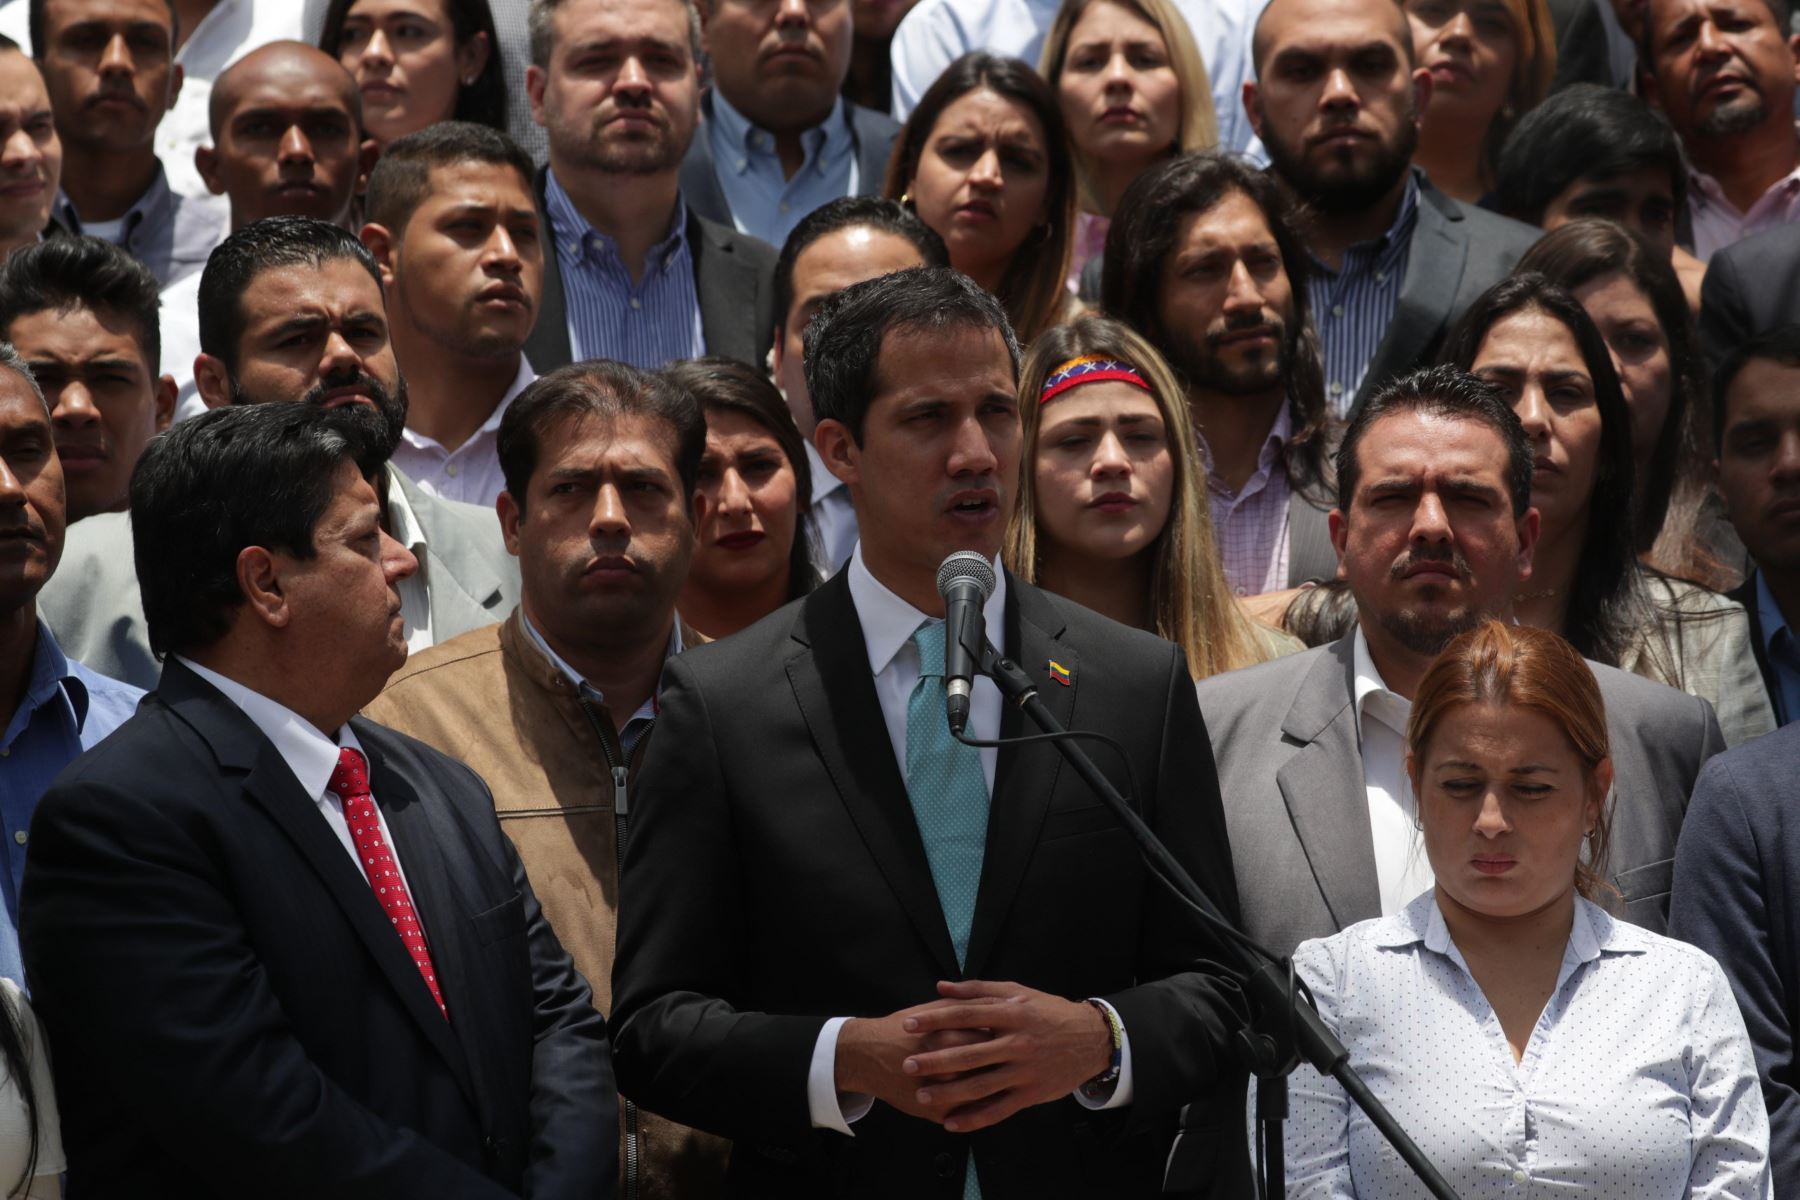 El jefe del Parlamento, Juan Guaidó, ofrece declaraciones tras el "Encuentro con líderes jóvenes por Venezuela" en Caracas. Foto: EFE